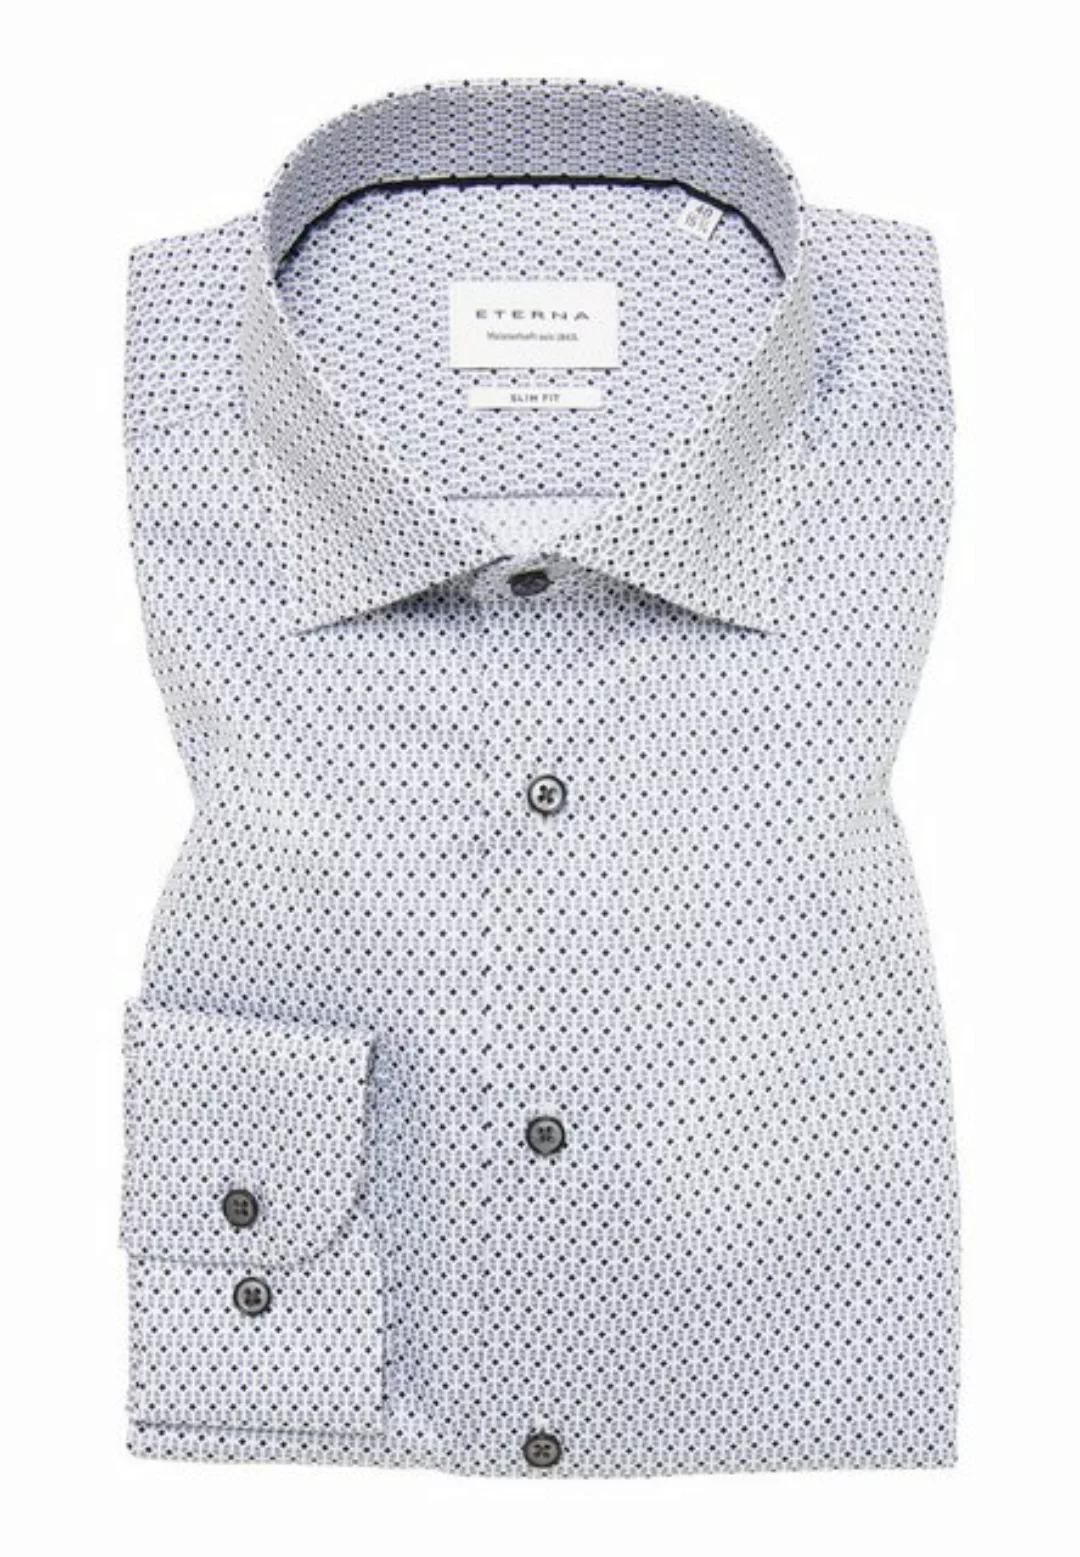 Eterna Langarmhemd - Slim fit Hemd - Hemd gemustert - Freizeithemd günstig online kaufen